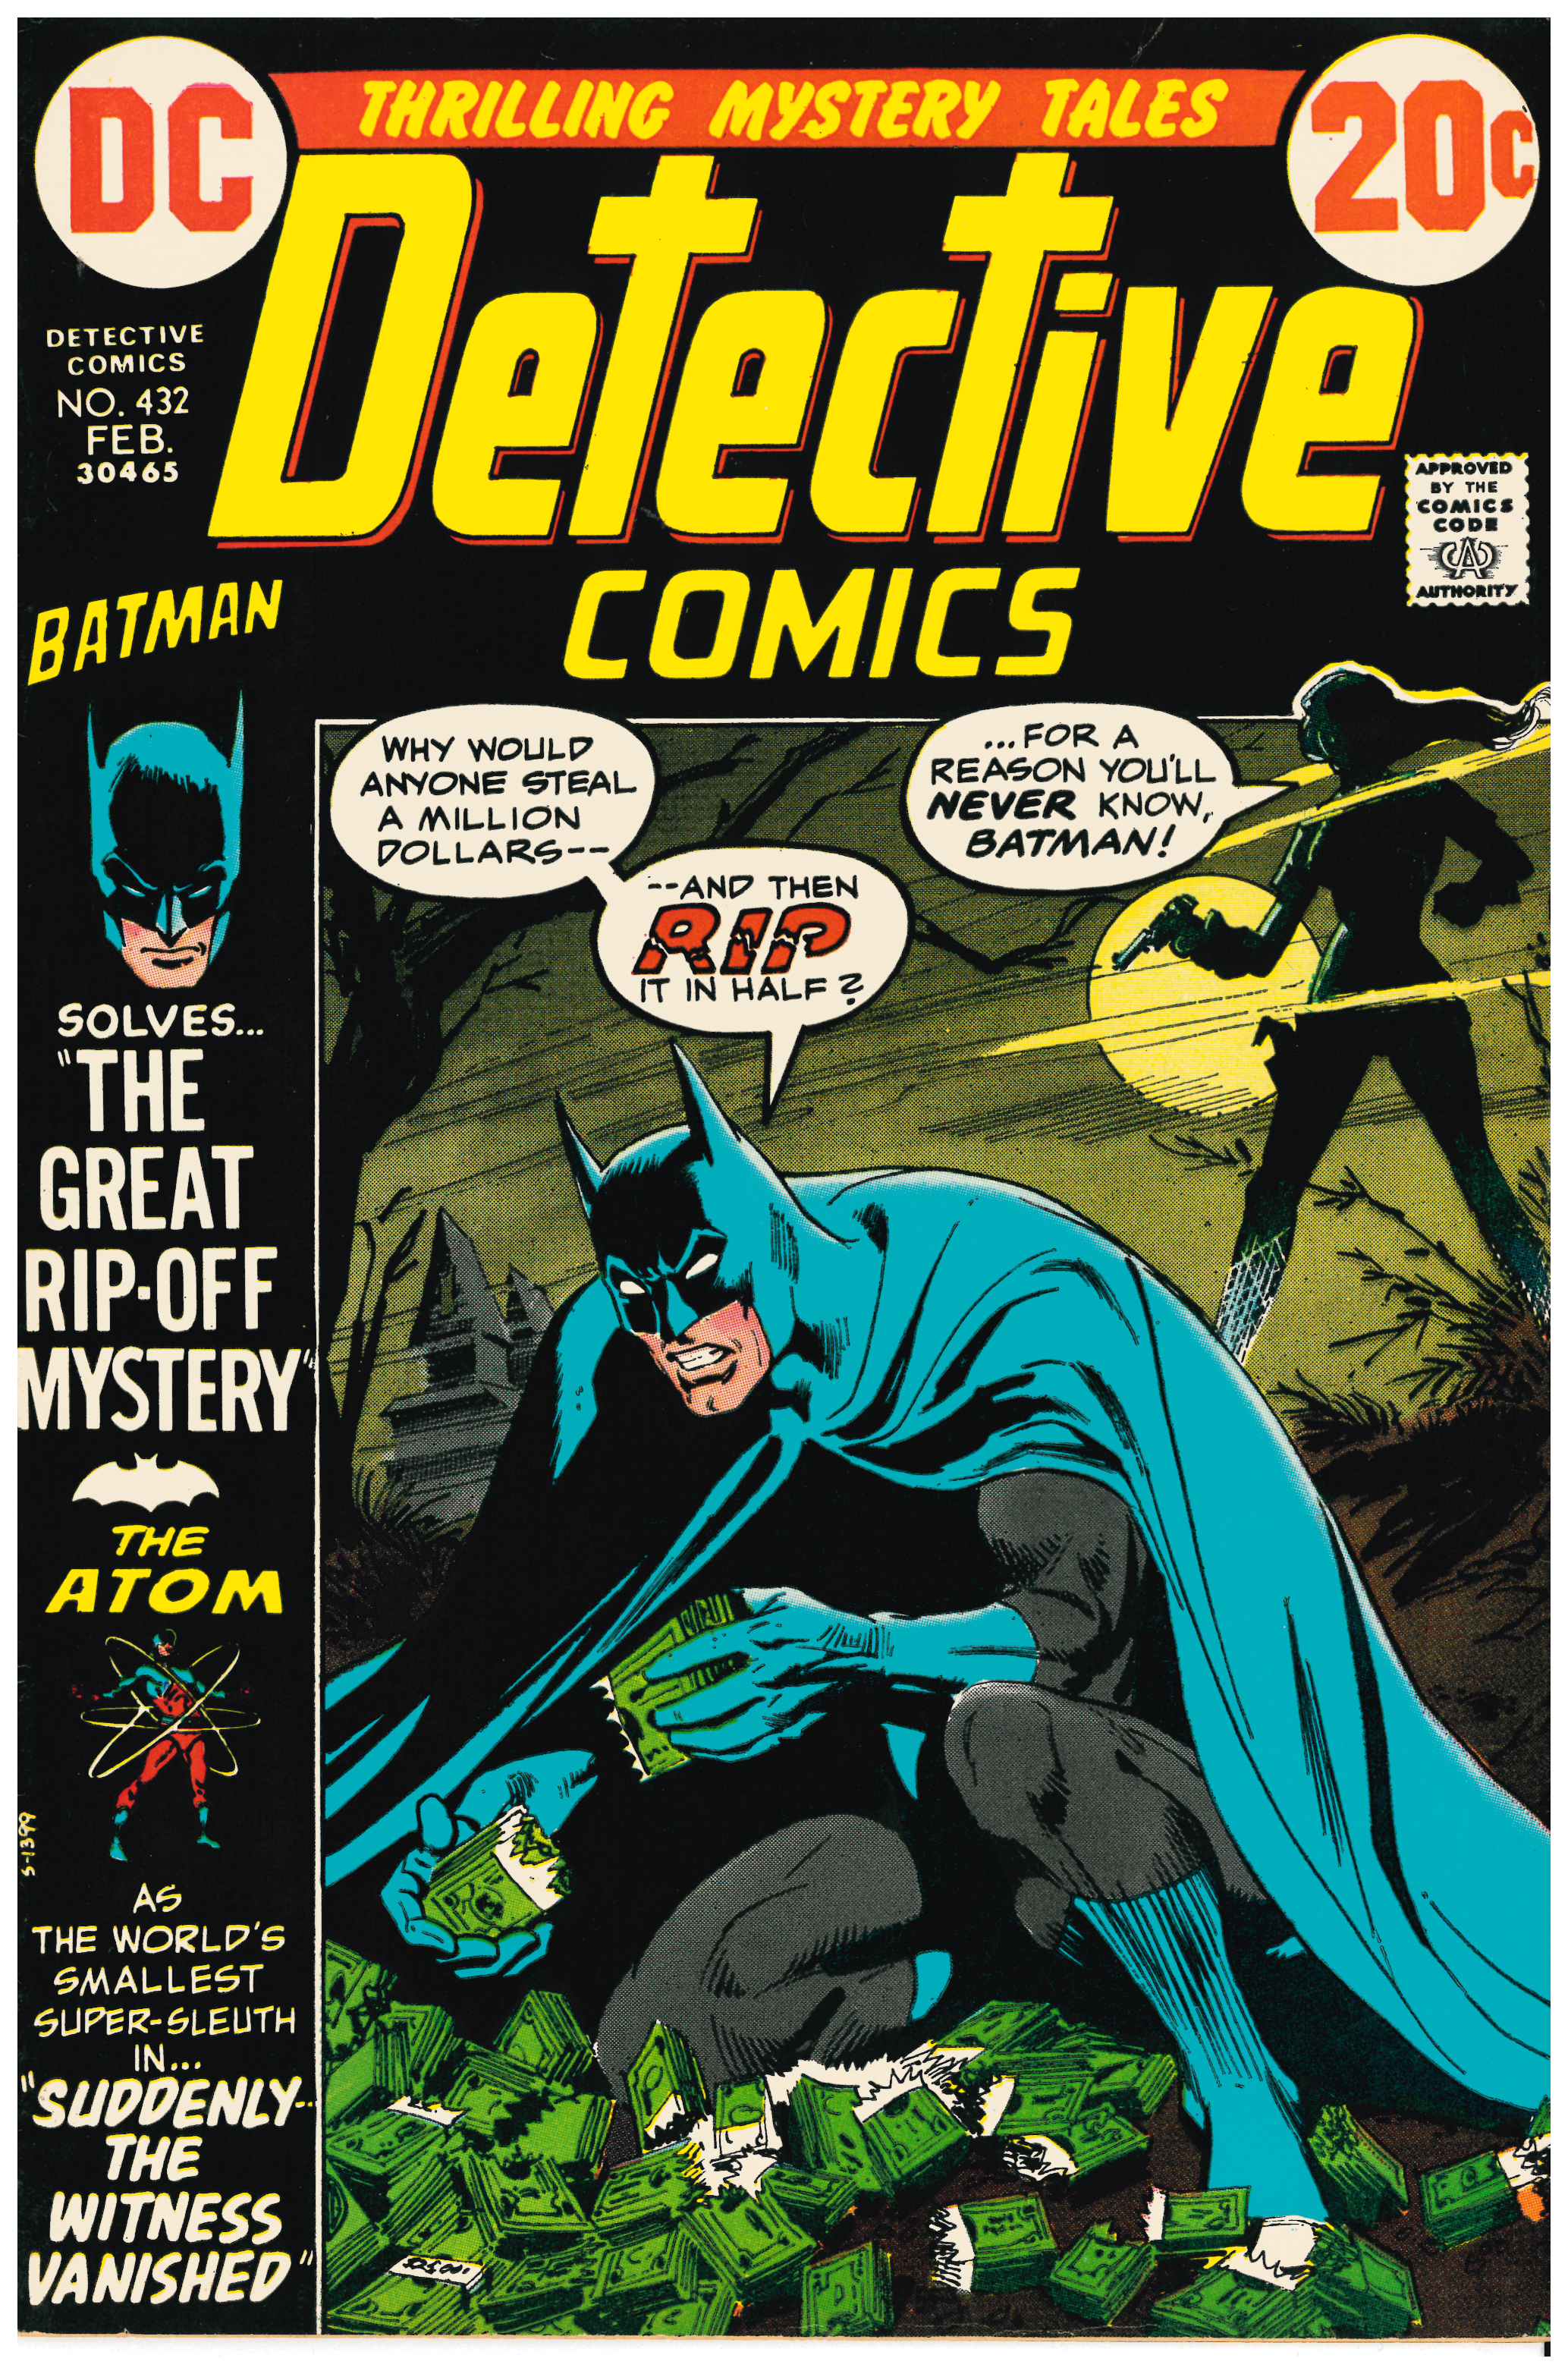 Detective Comics #432